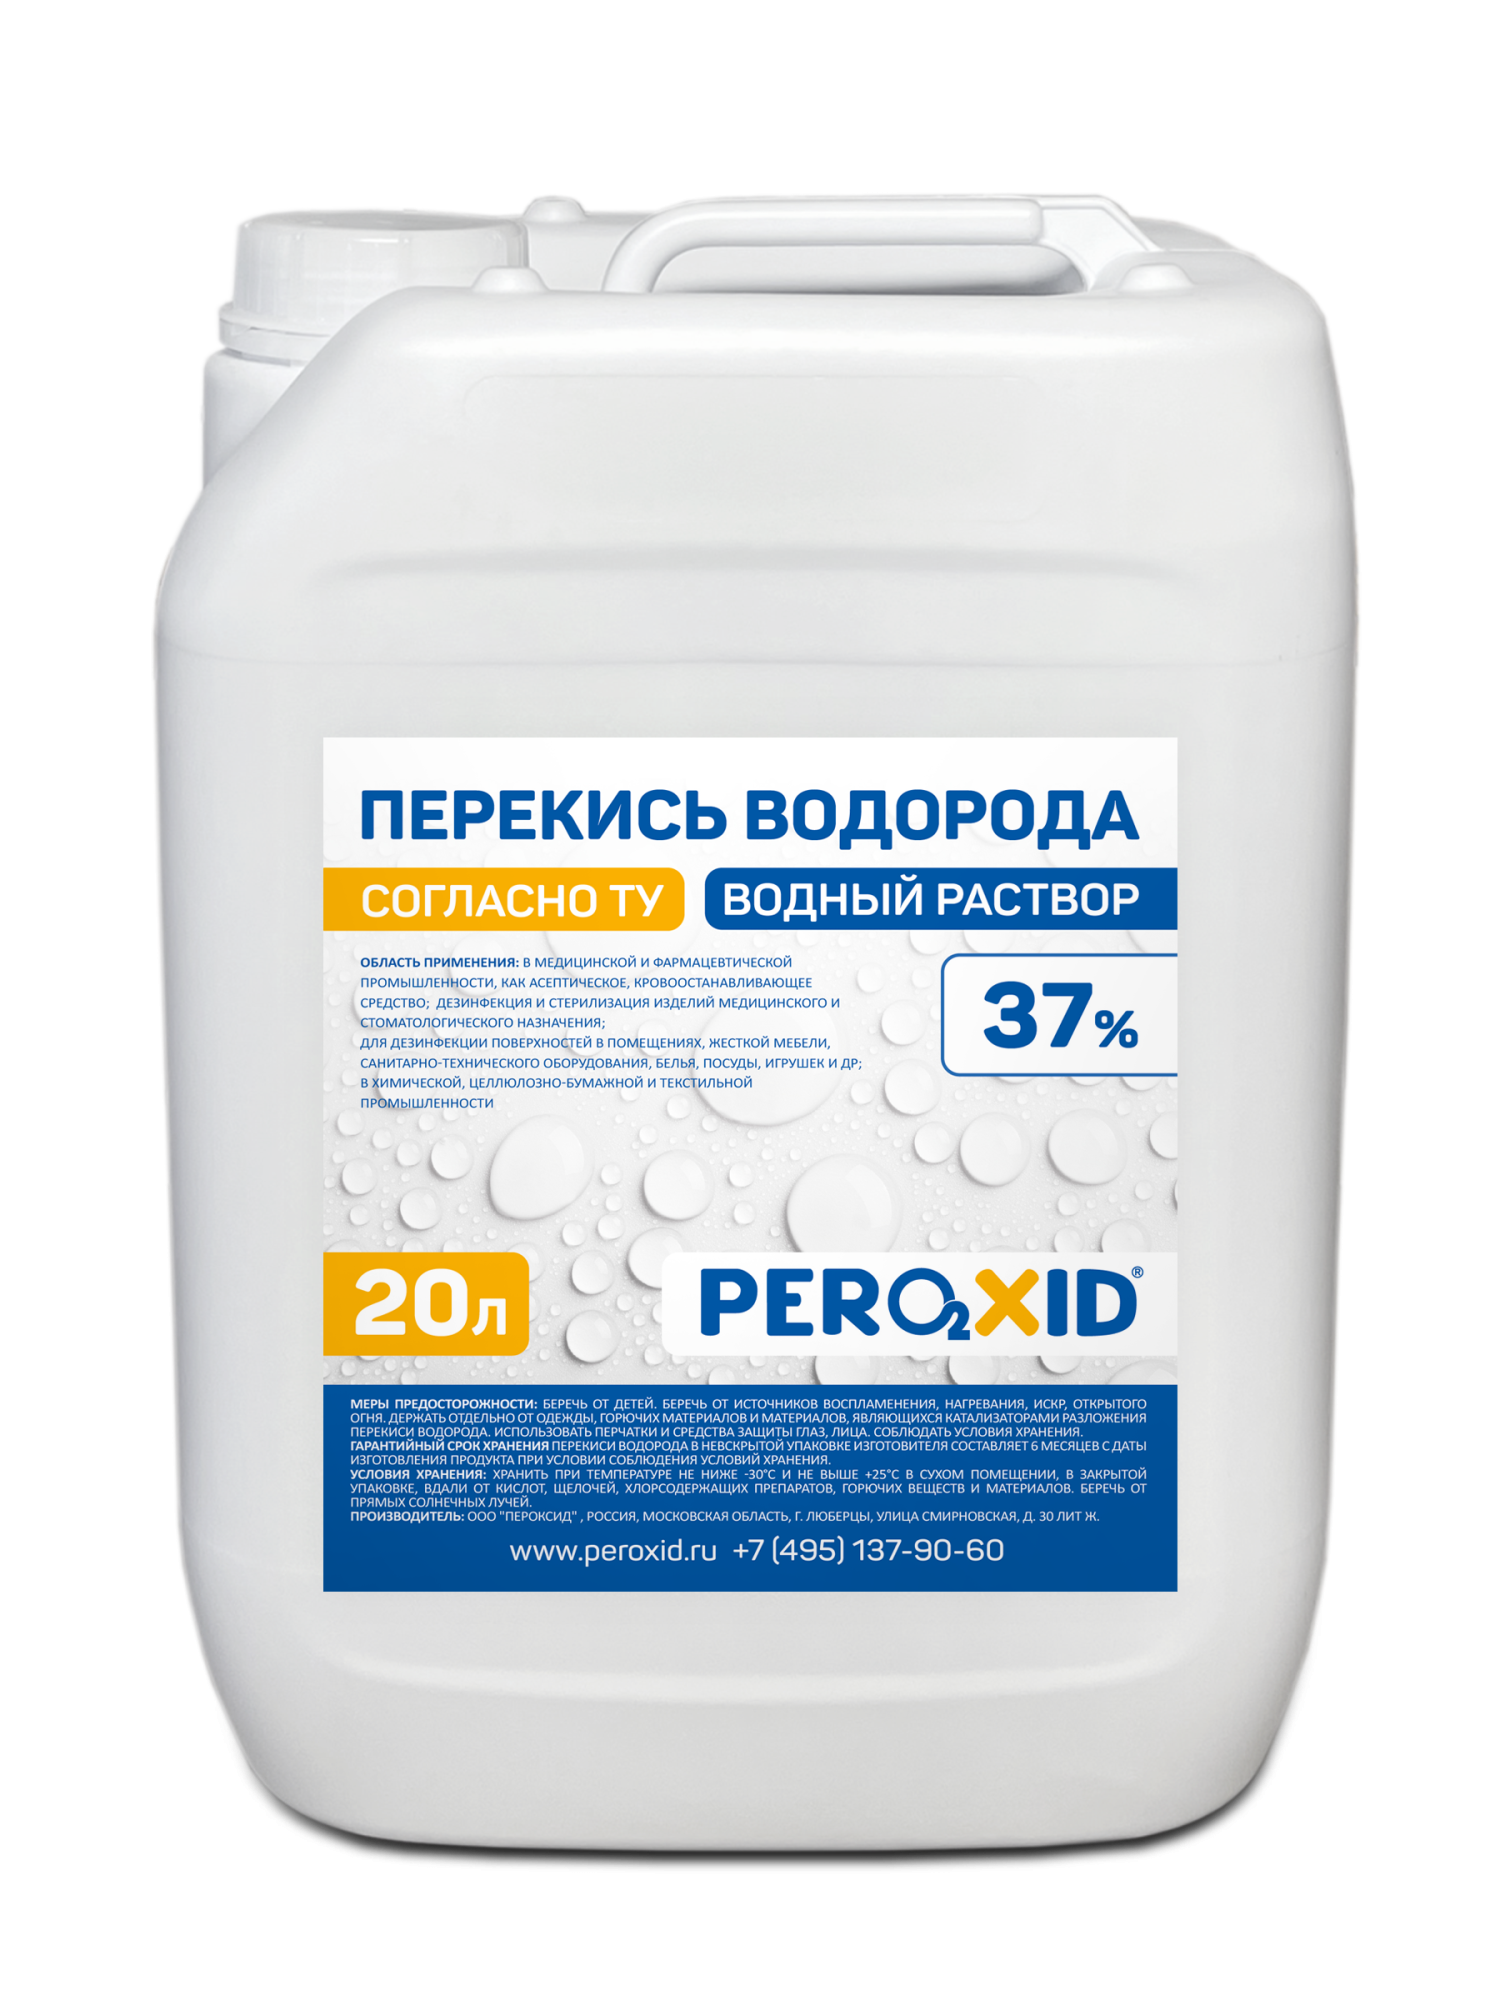 Перекись водорода водный раствор PEROXID 37% марка  ТУ 2123-001-25665344-2008 20 л/24 кг